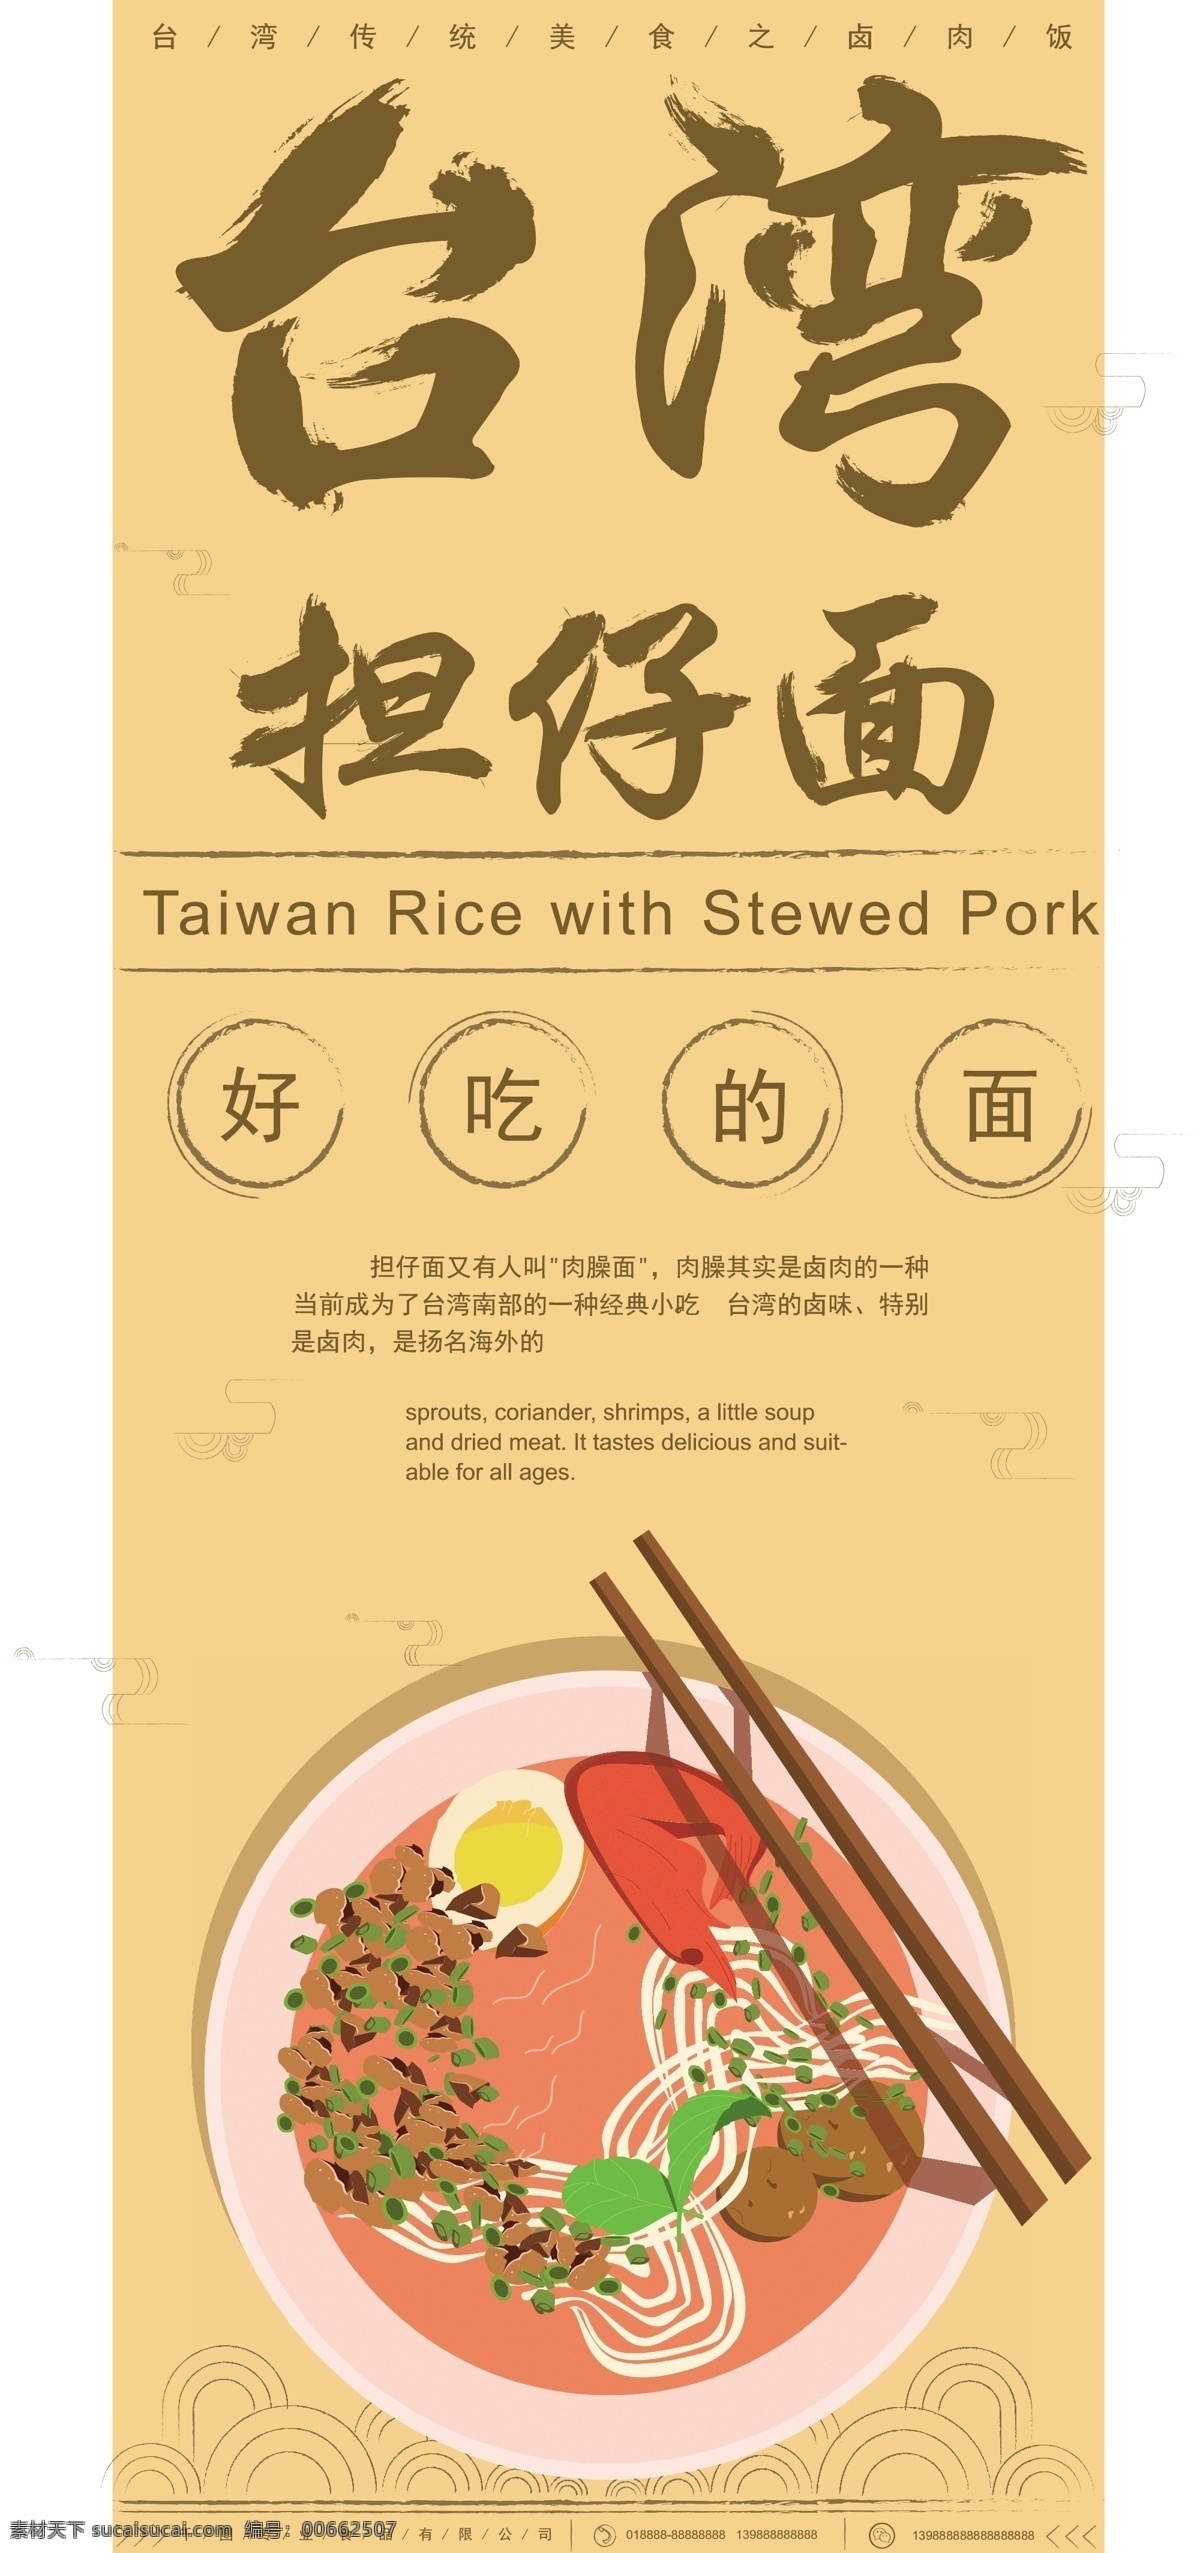 原创 手绘 台湾 美食 担 仔 复古 风 展架 台湾美食 担仔面 宣传 促销